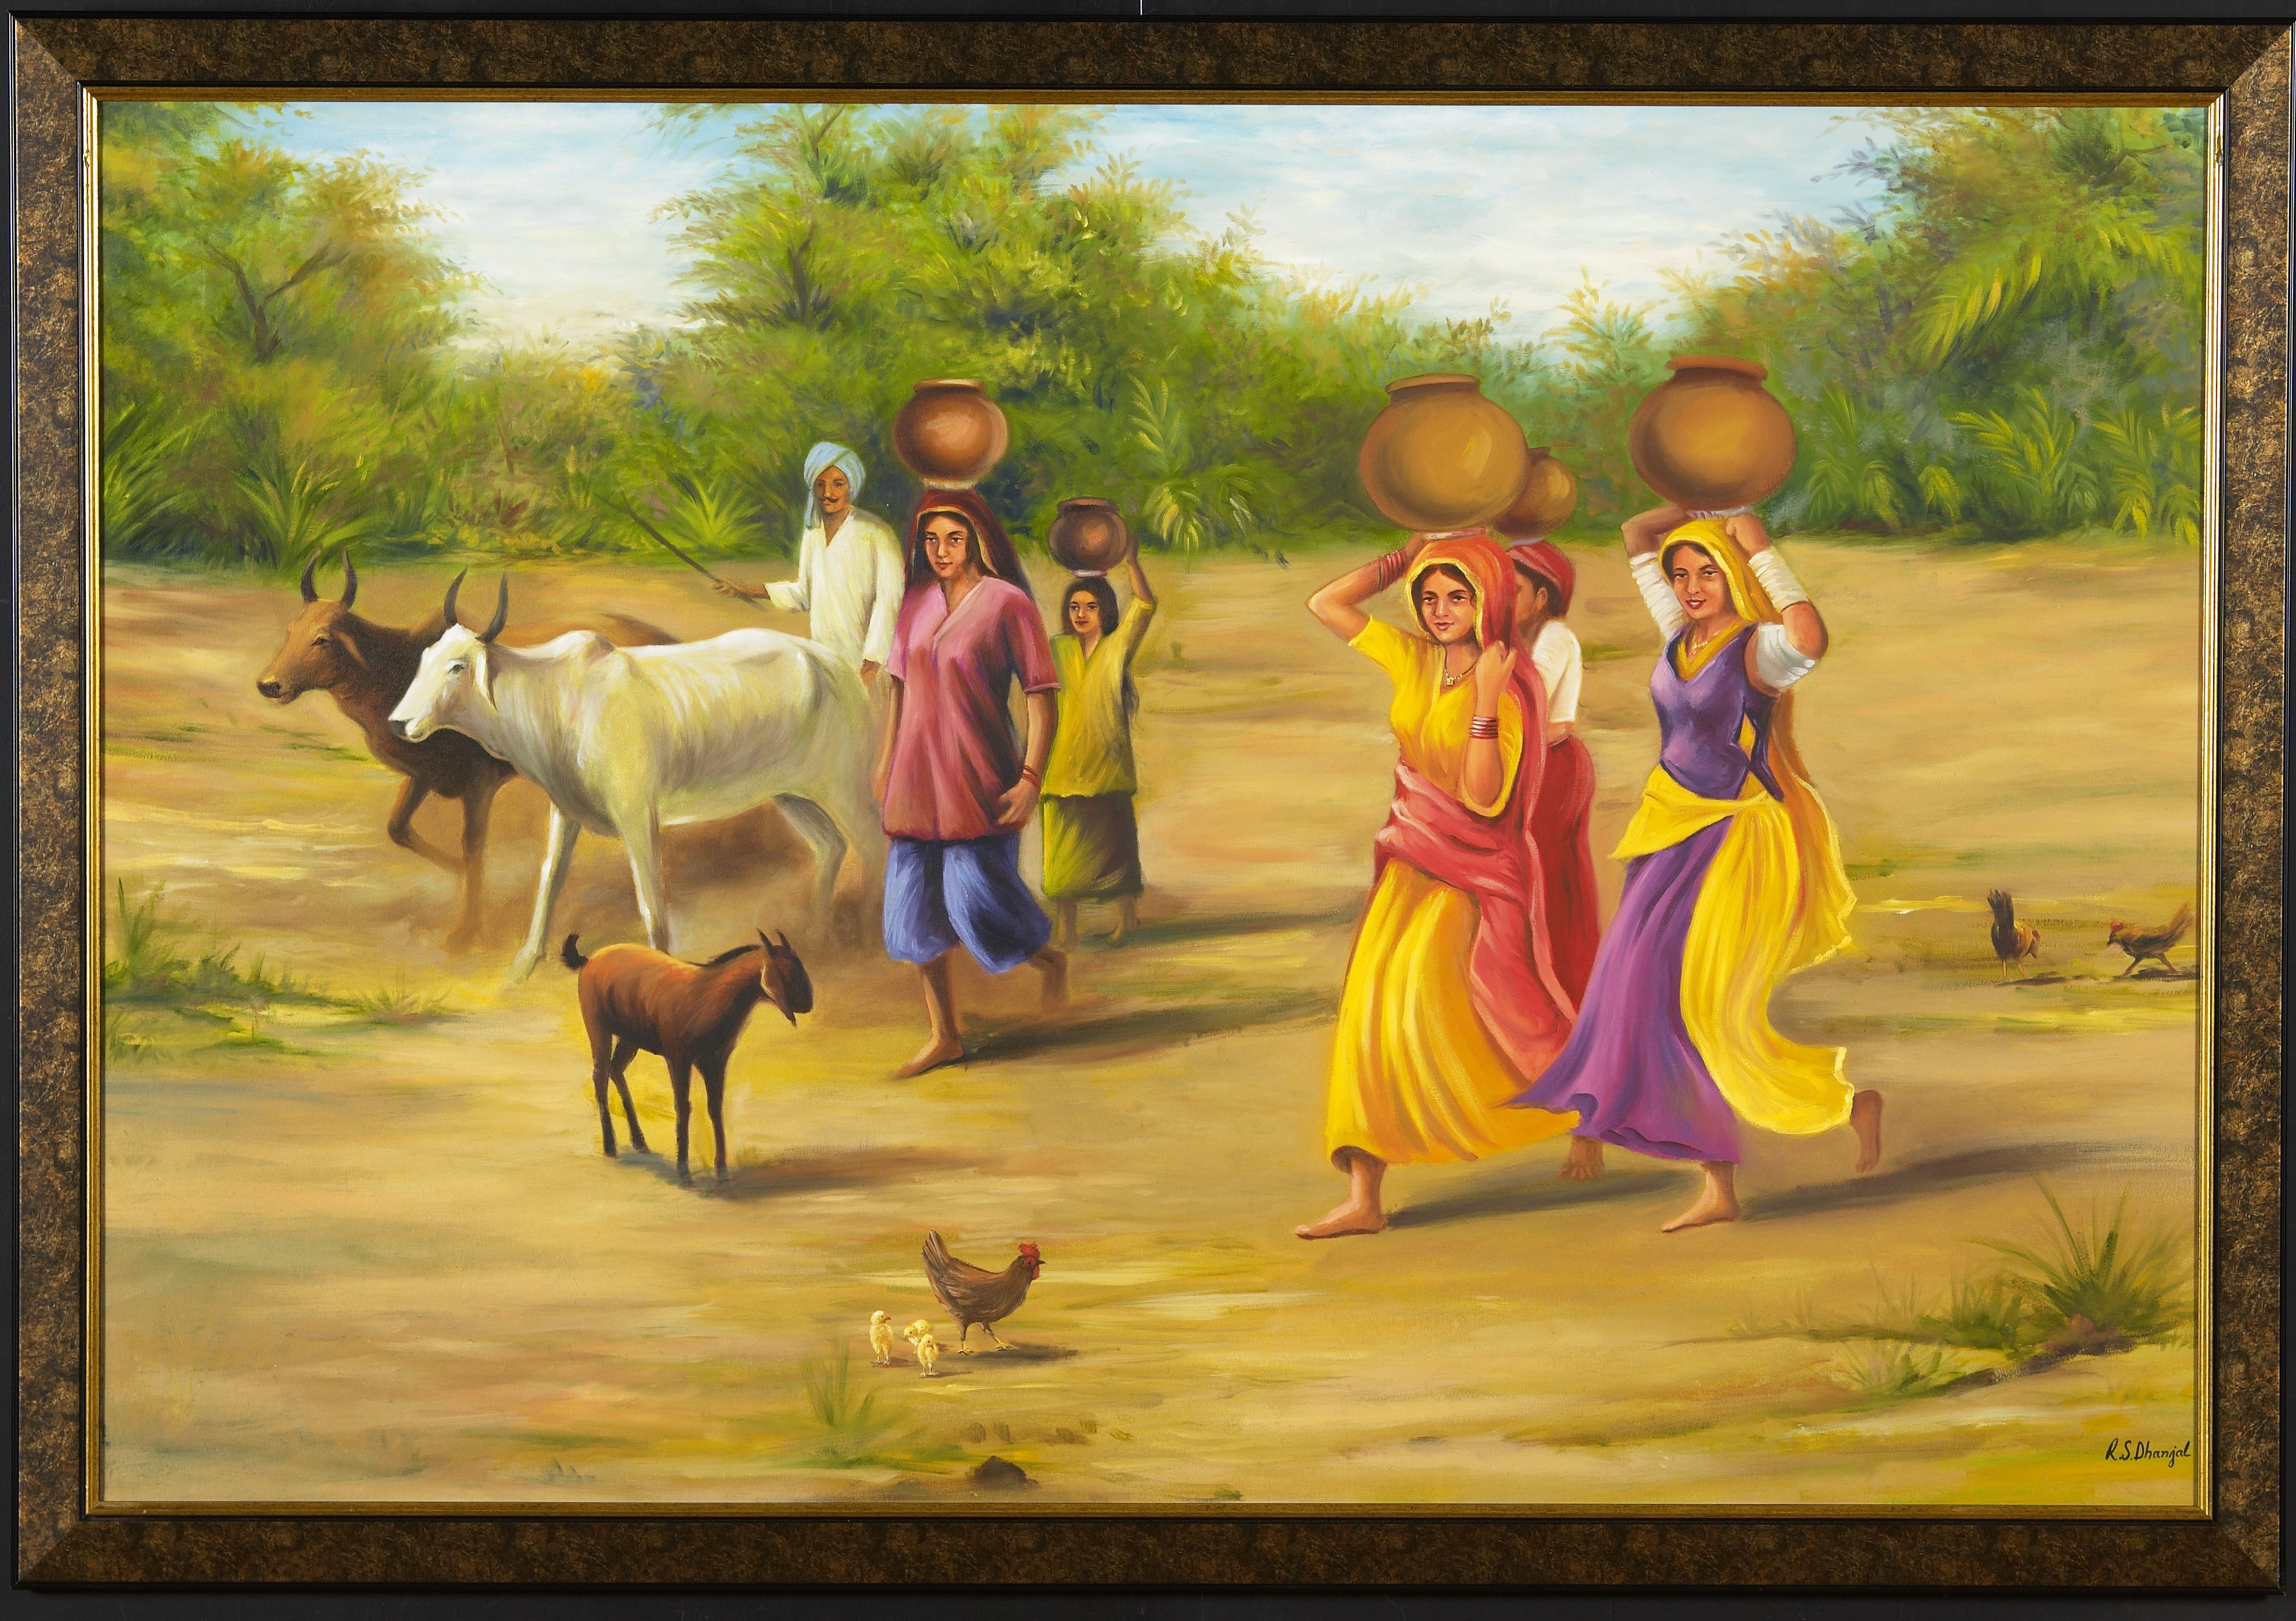 Original Size At Village Scene Painting Vastu